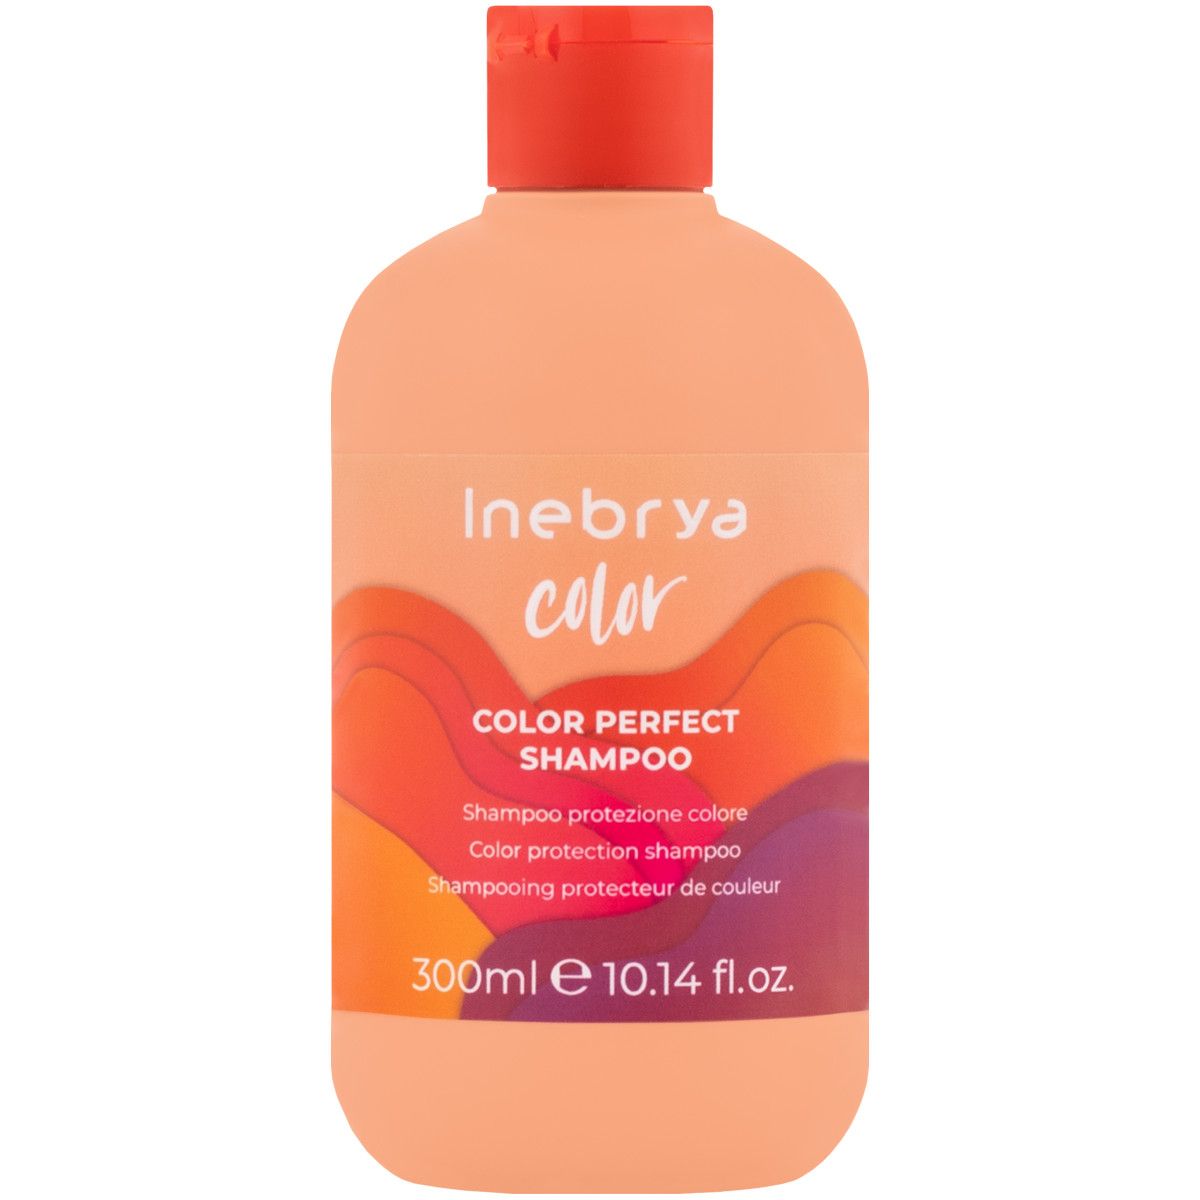 inebrya color szampon opinie